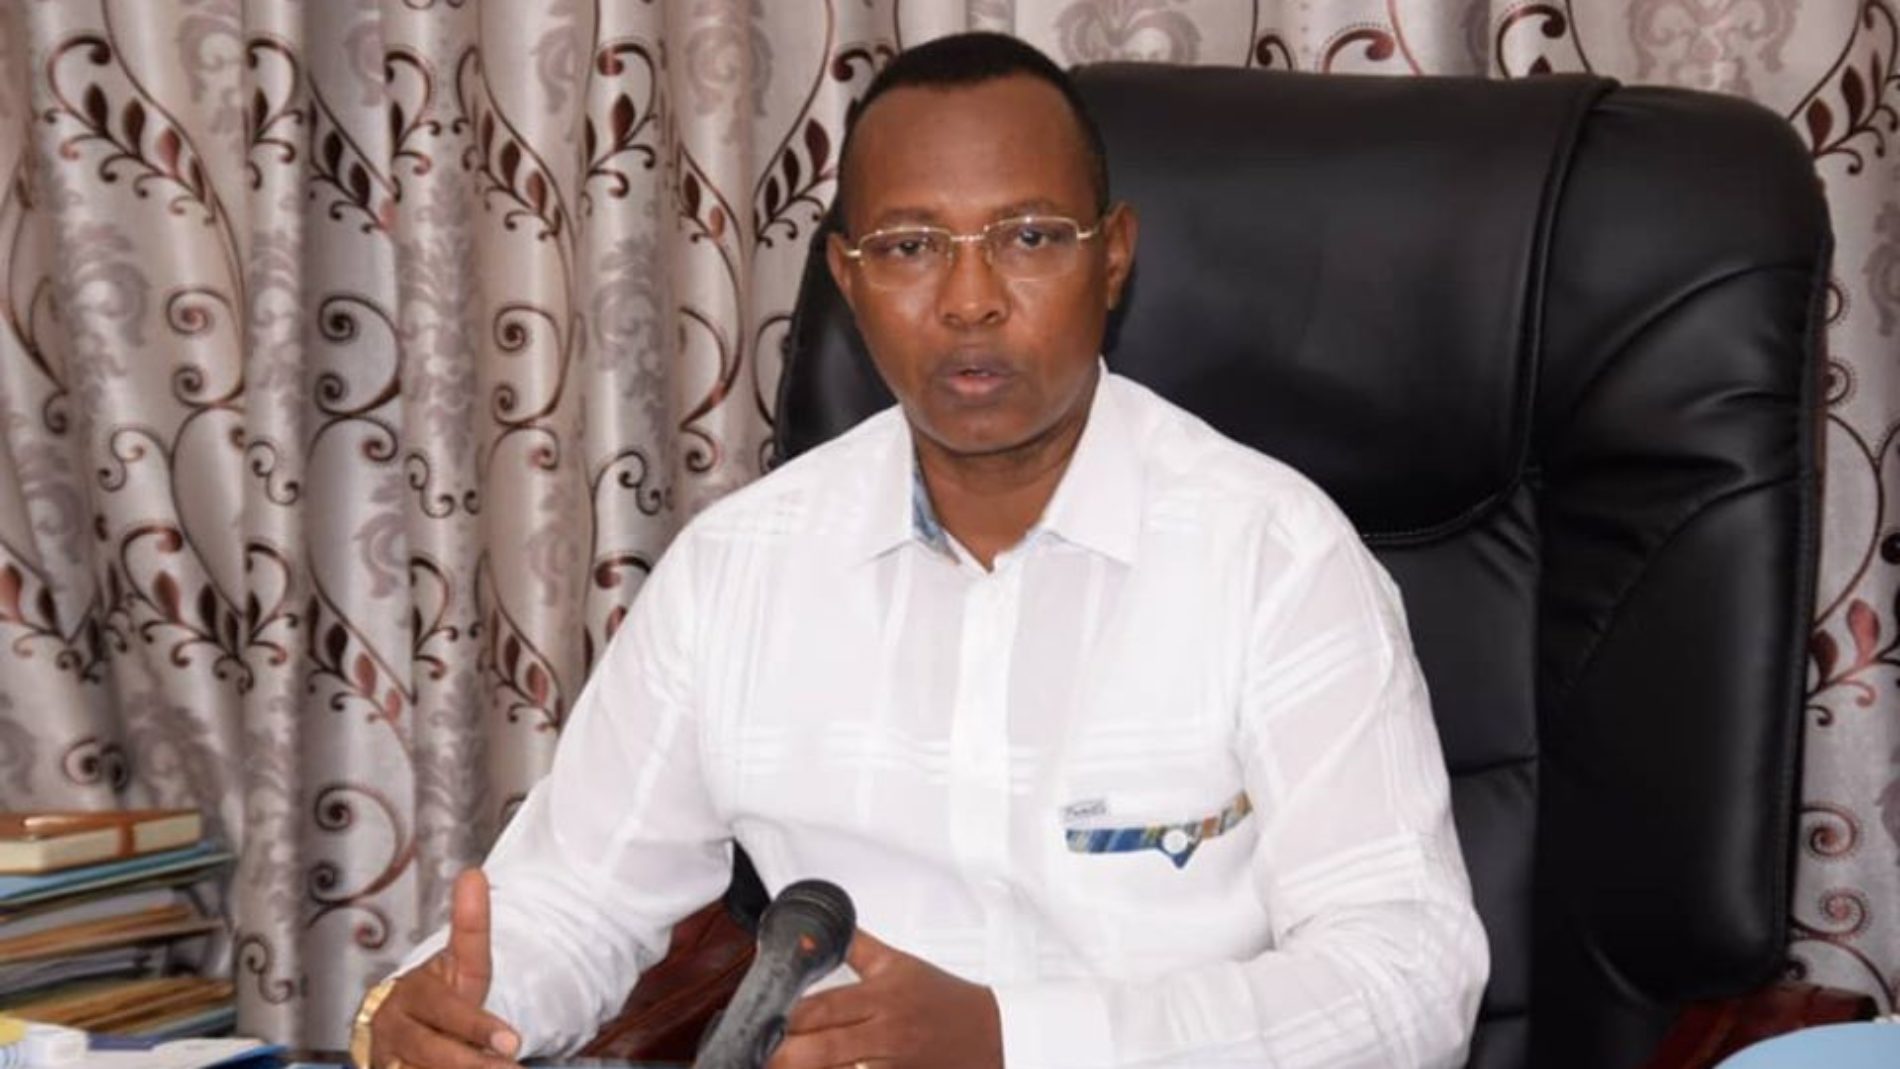 La mesure du maire de Bujumbura de restreindre les activités des partis politiques fait grincer Des dents